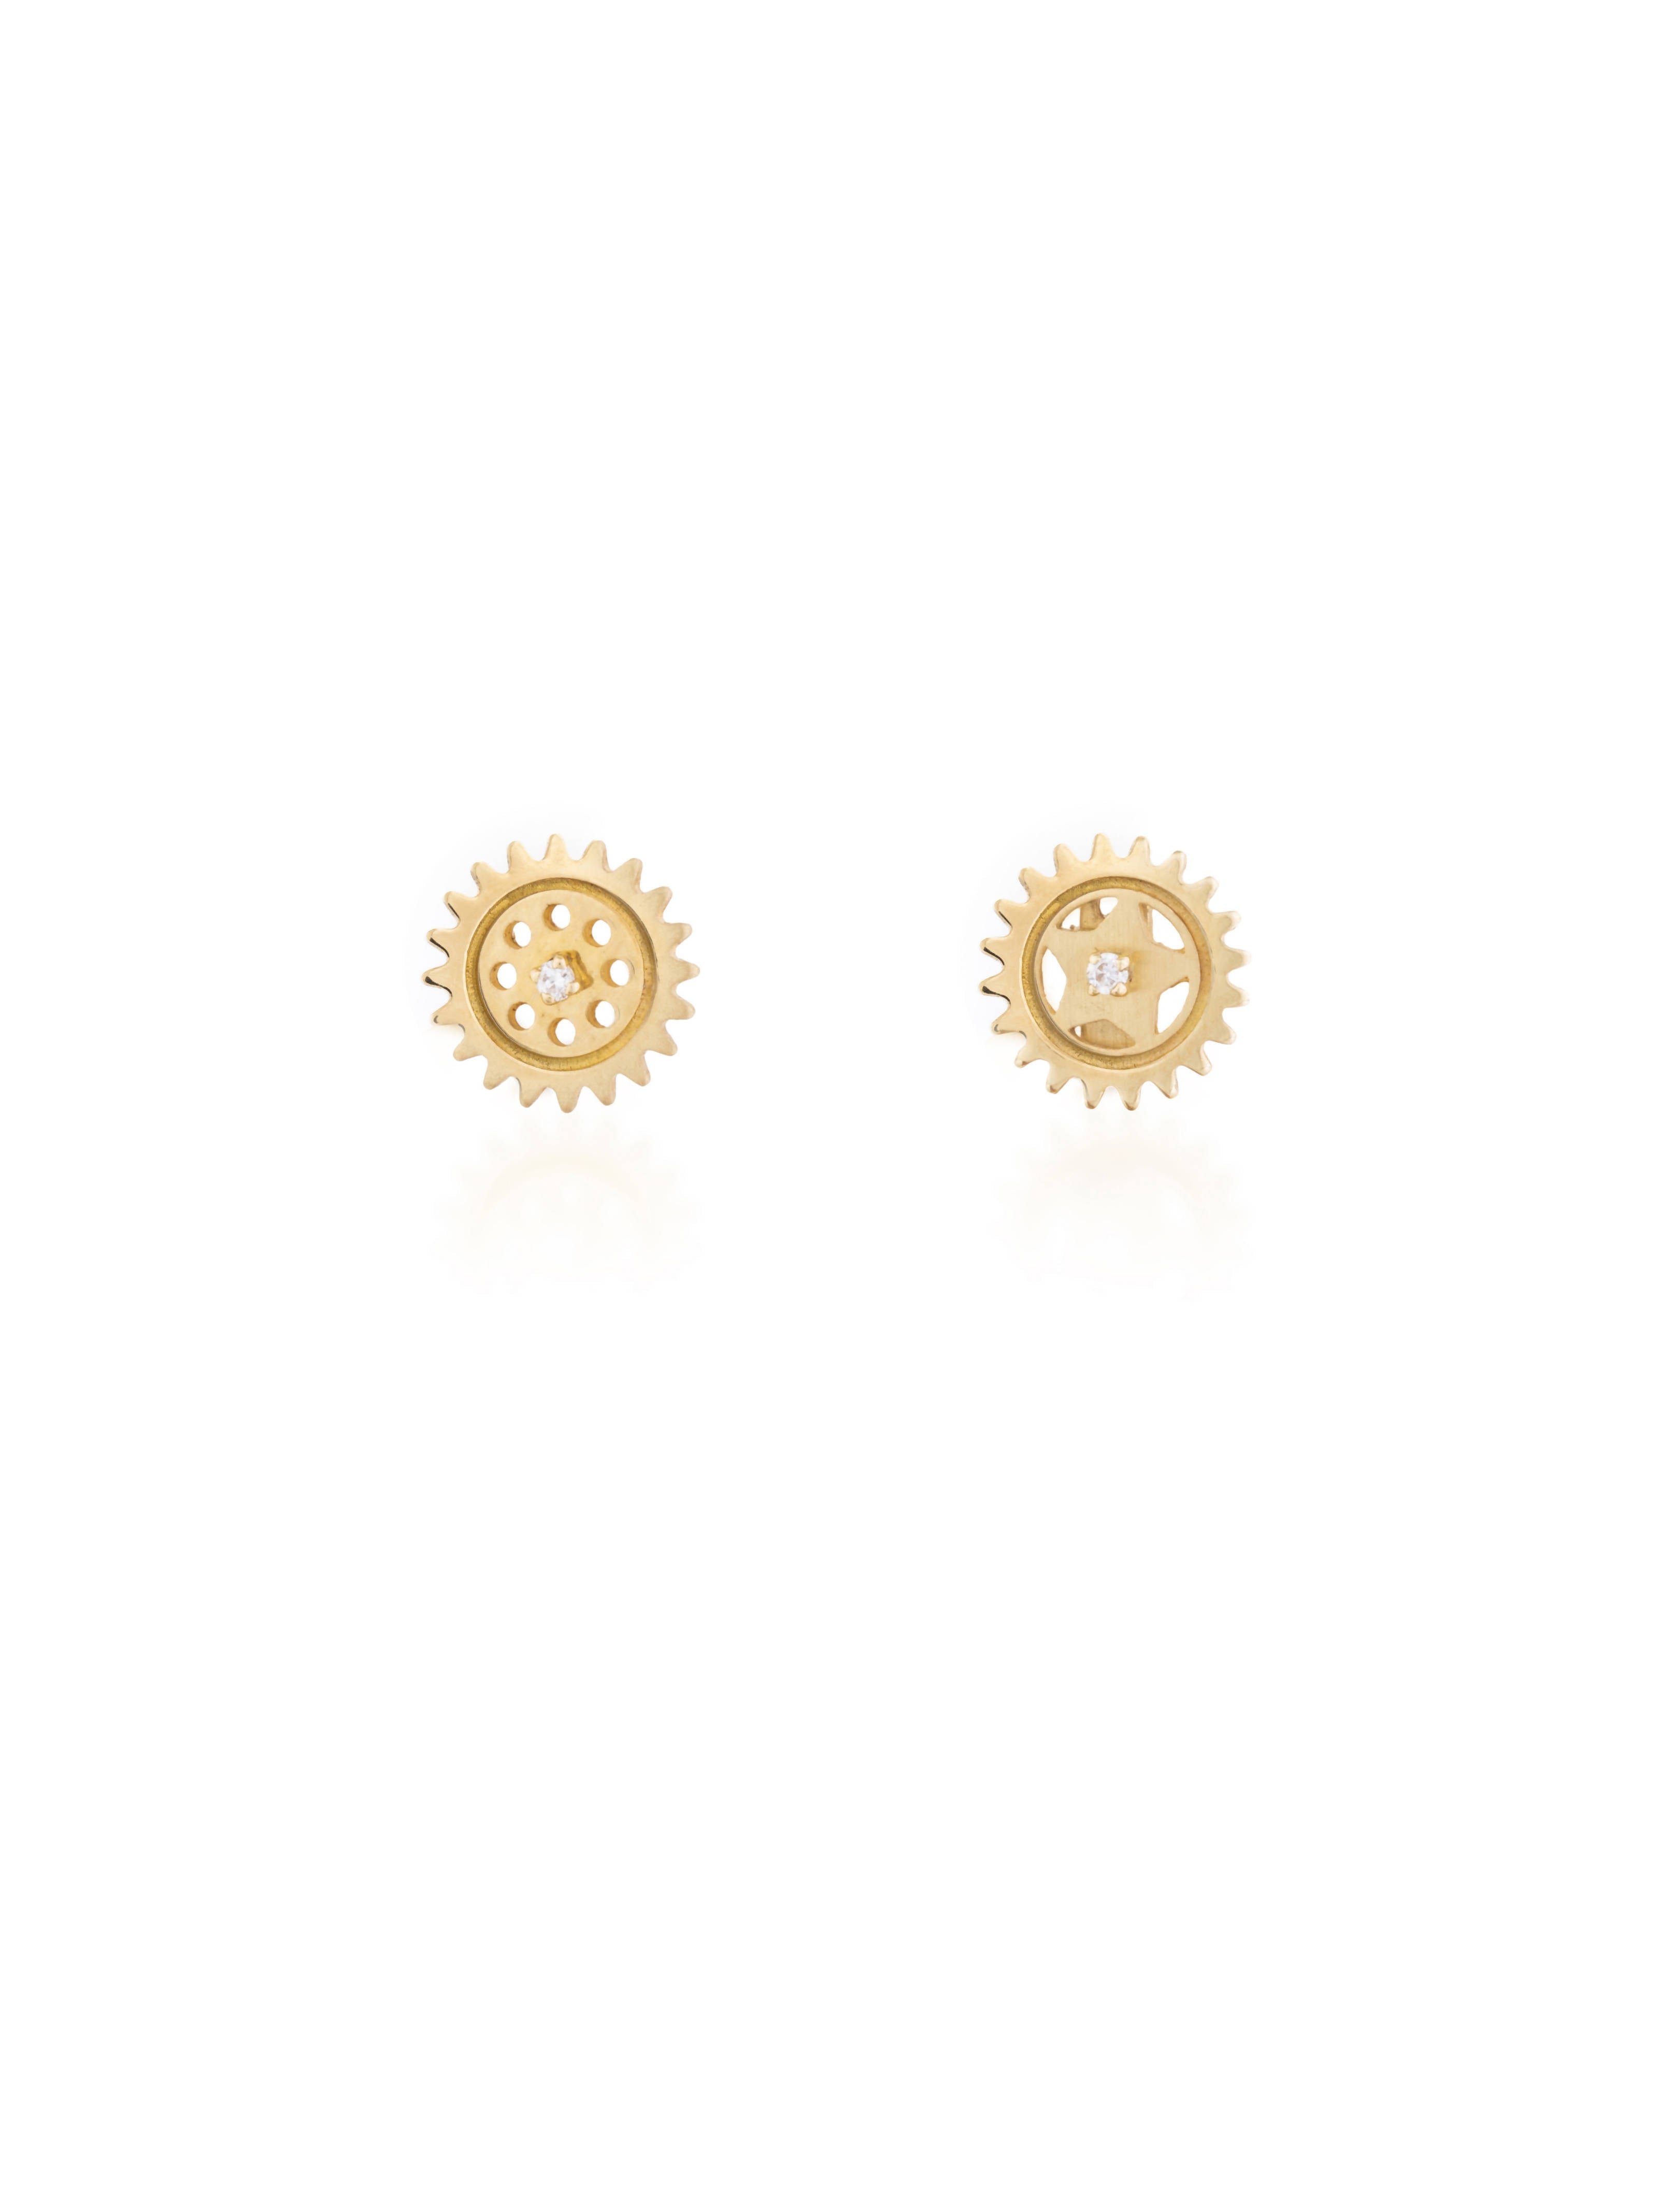 gold-uno-gear-earring- By Delcy